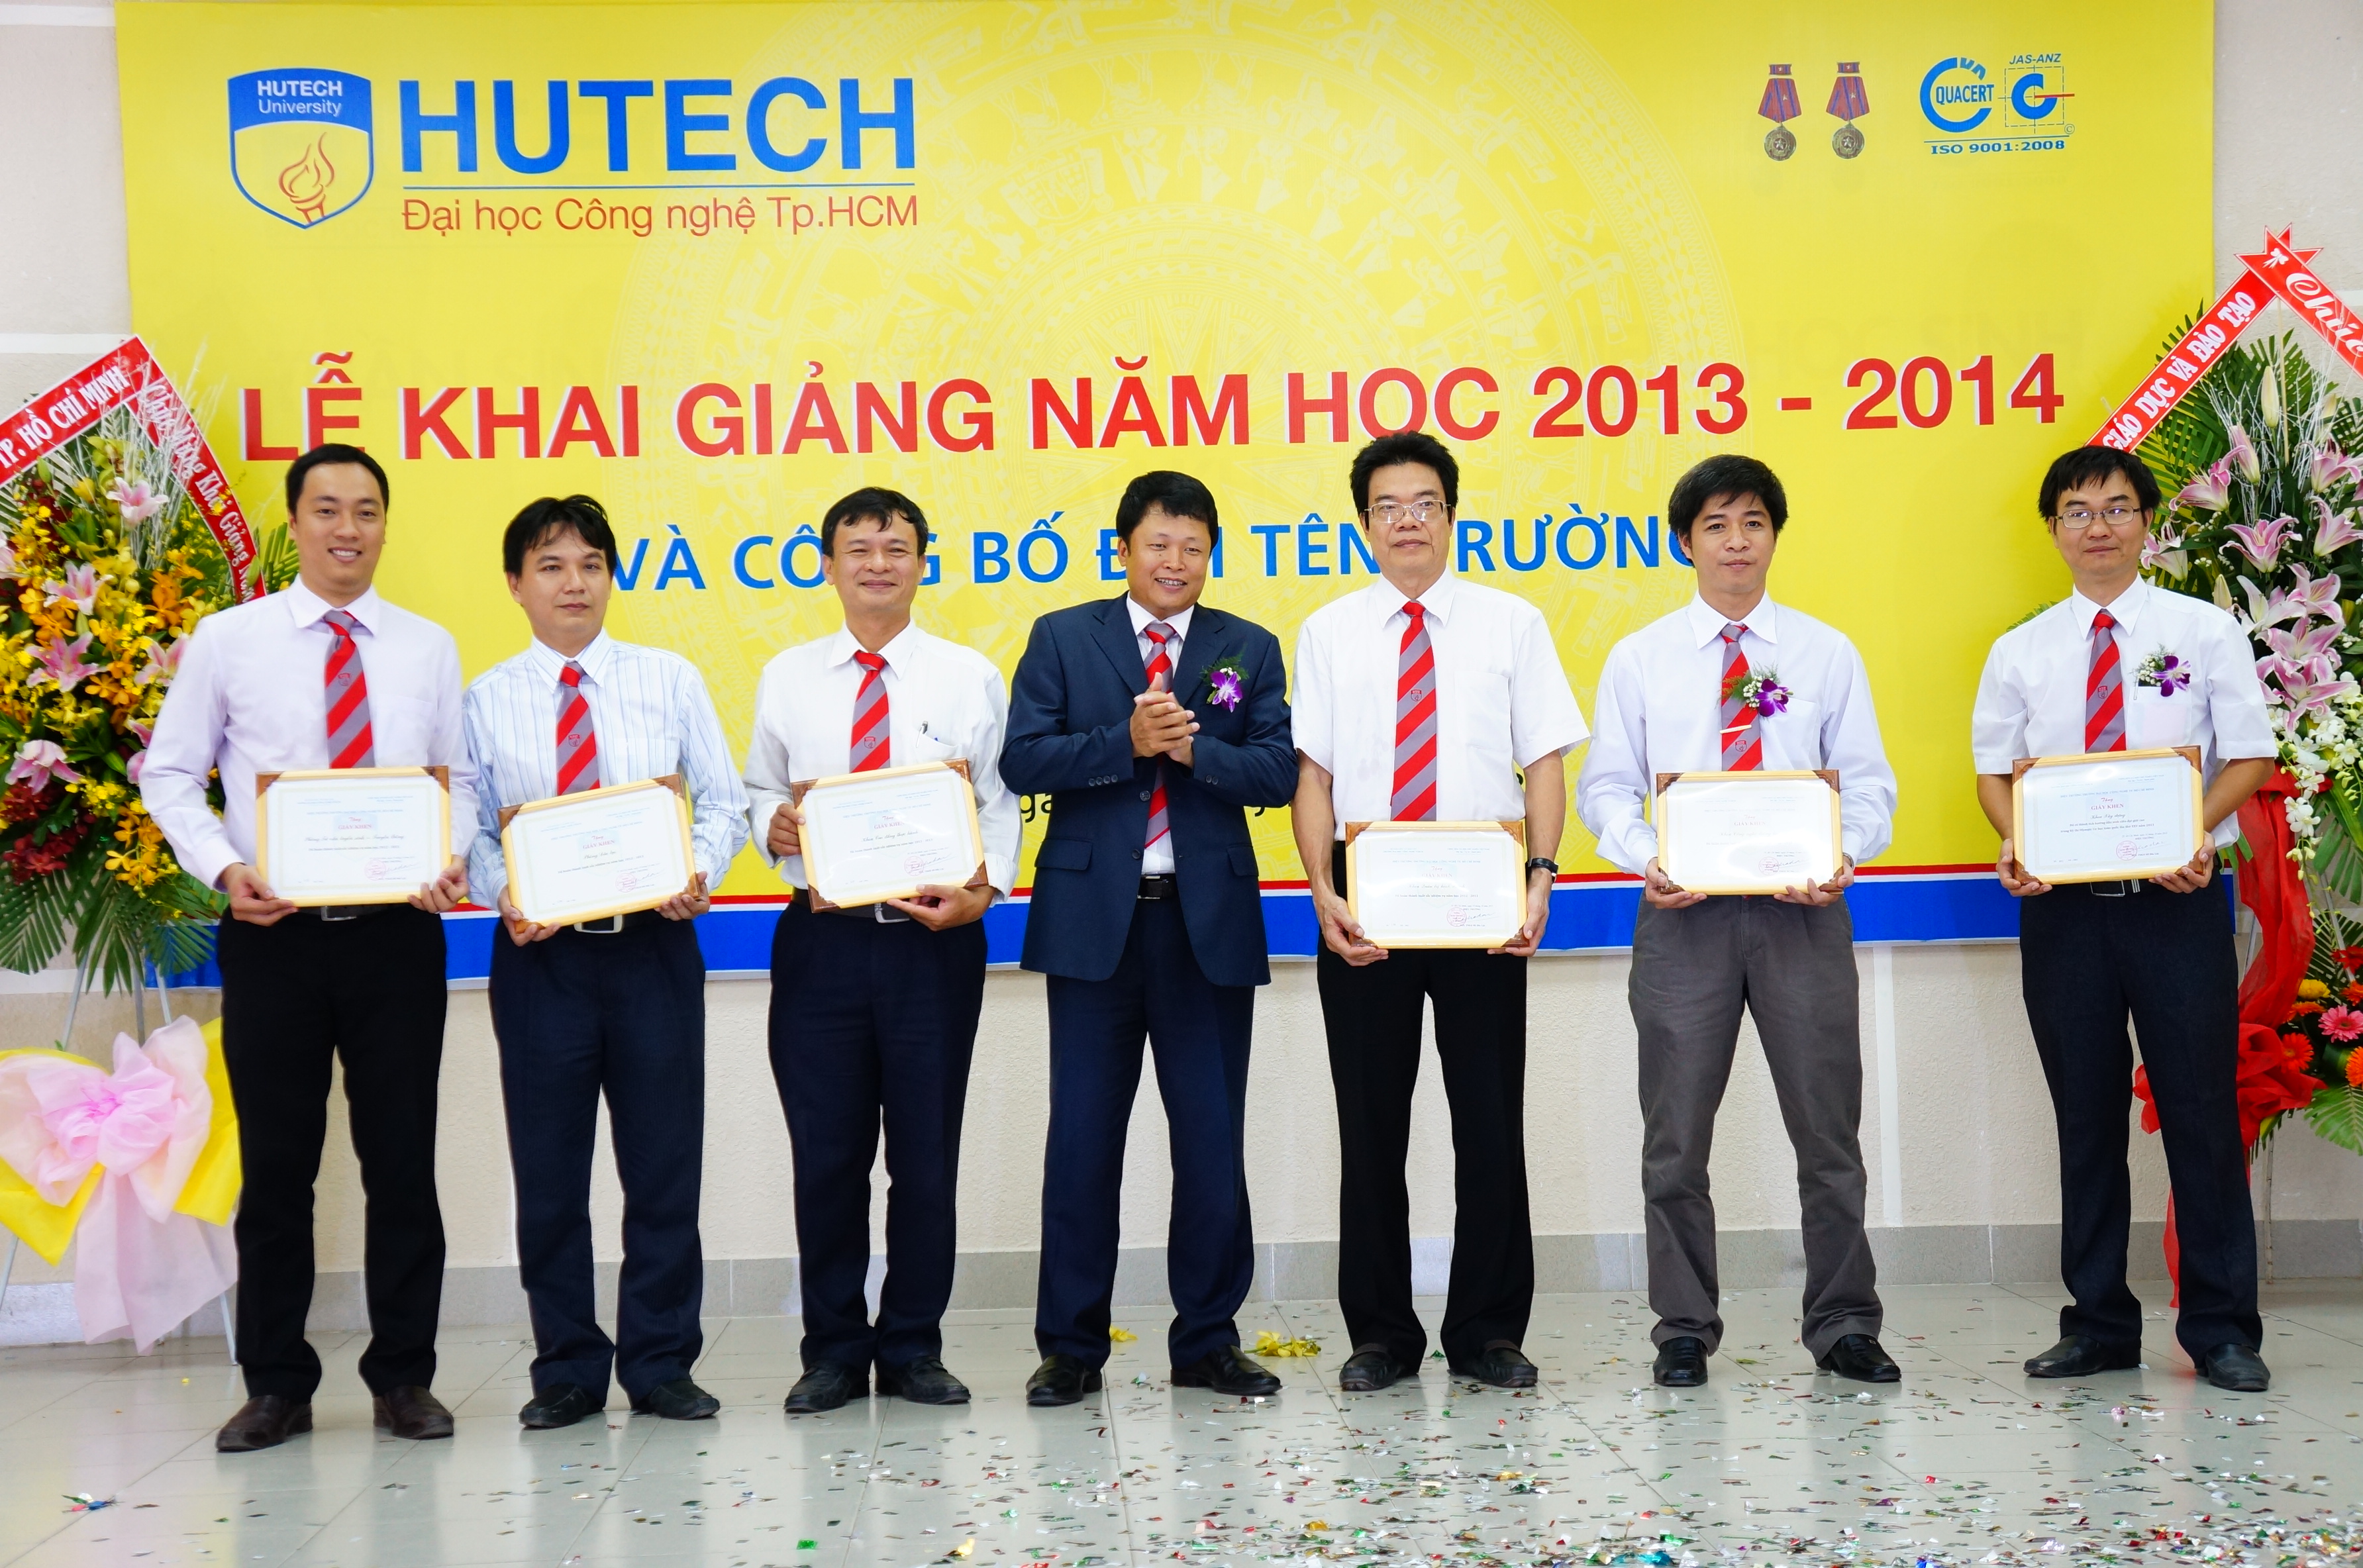 ĐH Kỹ thuật Công nghệ TP.HCM (HUTECH) chính thức đổi tên trường 99